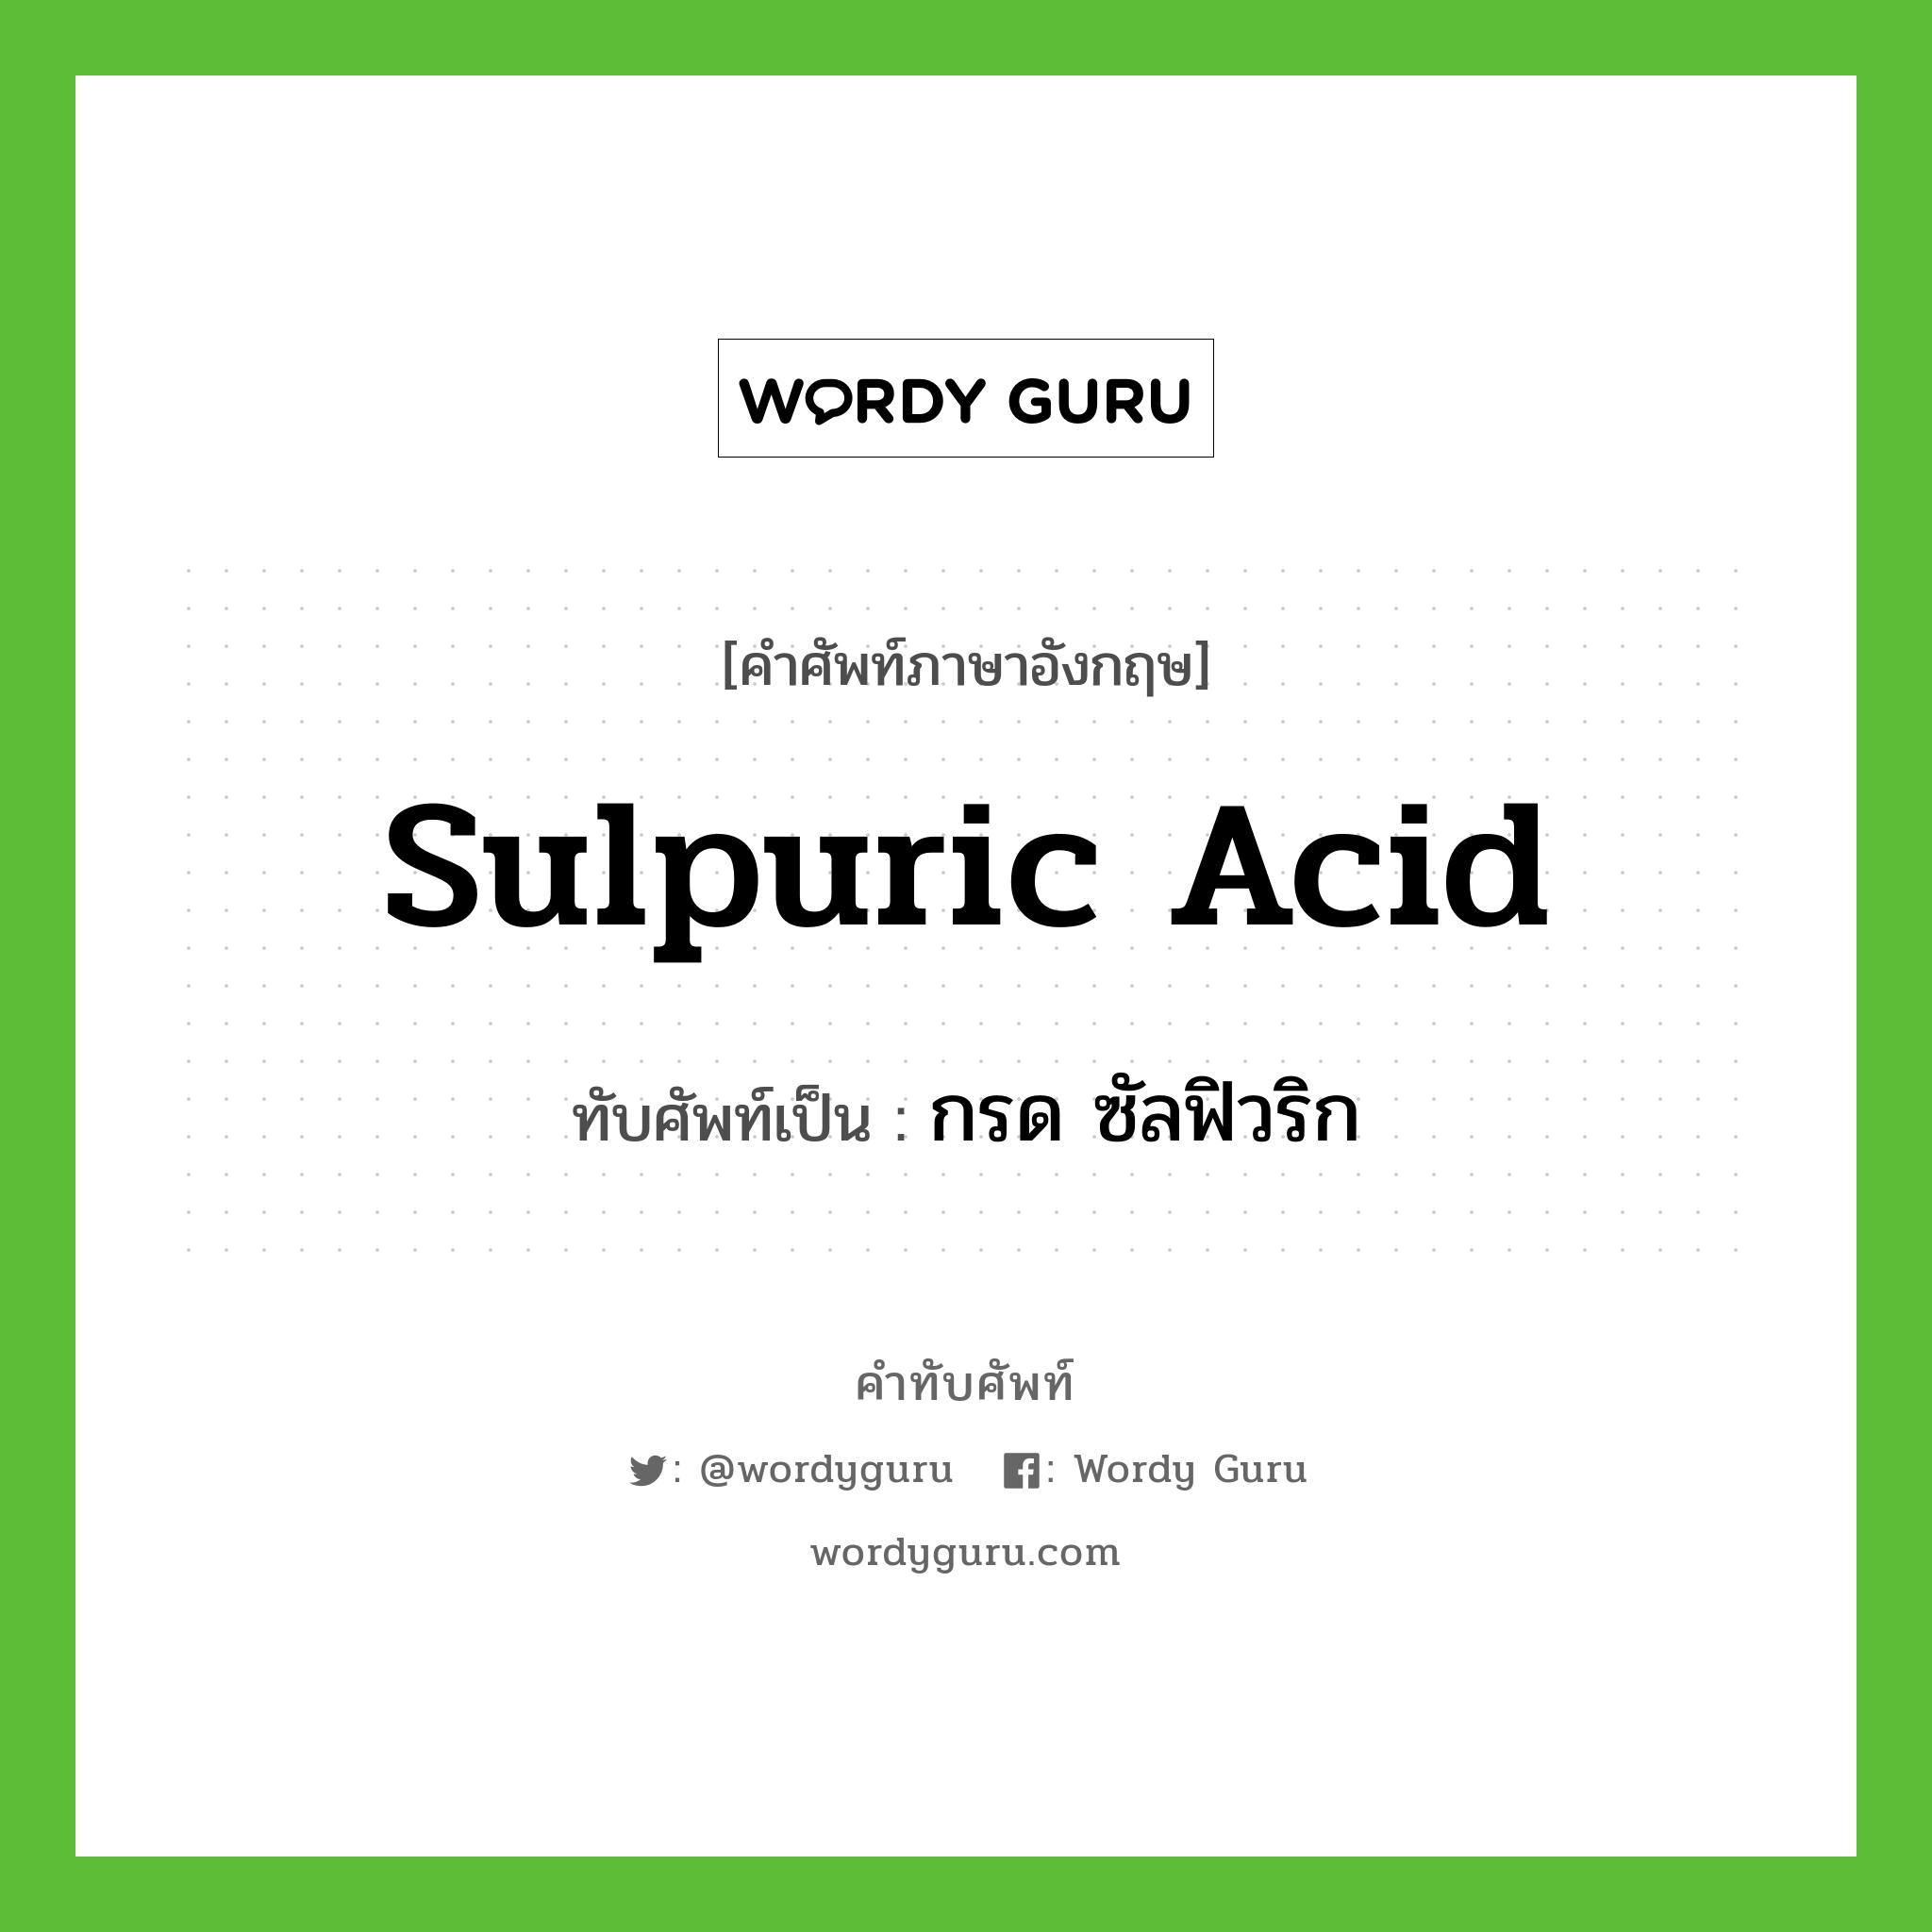 sulpuric acid เขียนเป็นคำไทยว่าอะไร?, คำศัพท์ภาษาอังกฤษ sulpuric acid ทับศัพท์เป็น กรด ซัลฟิวริก